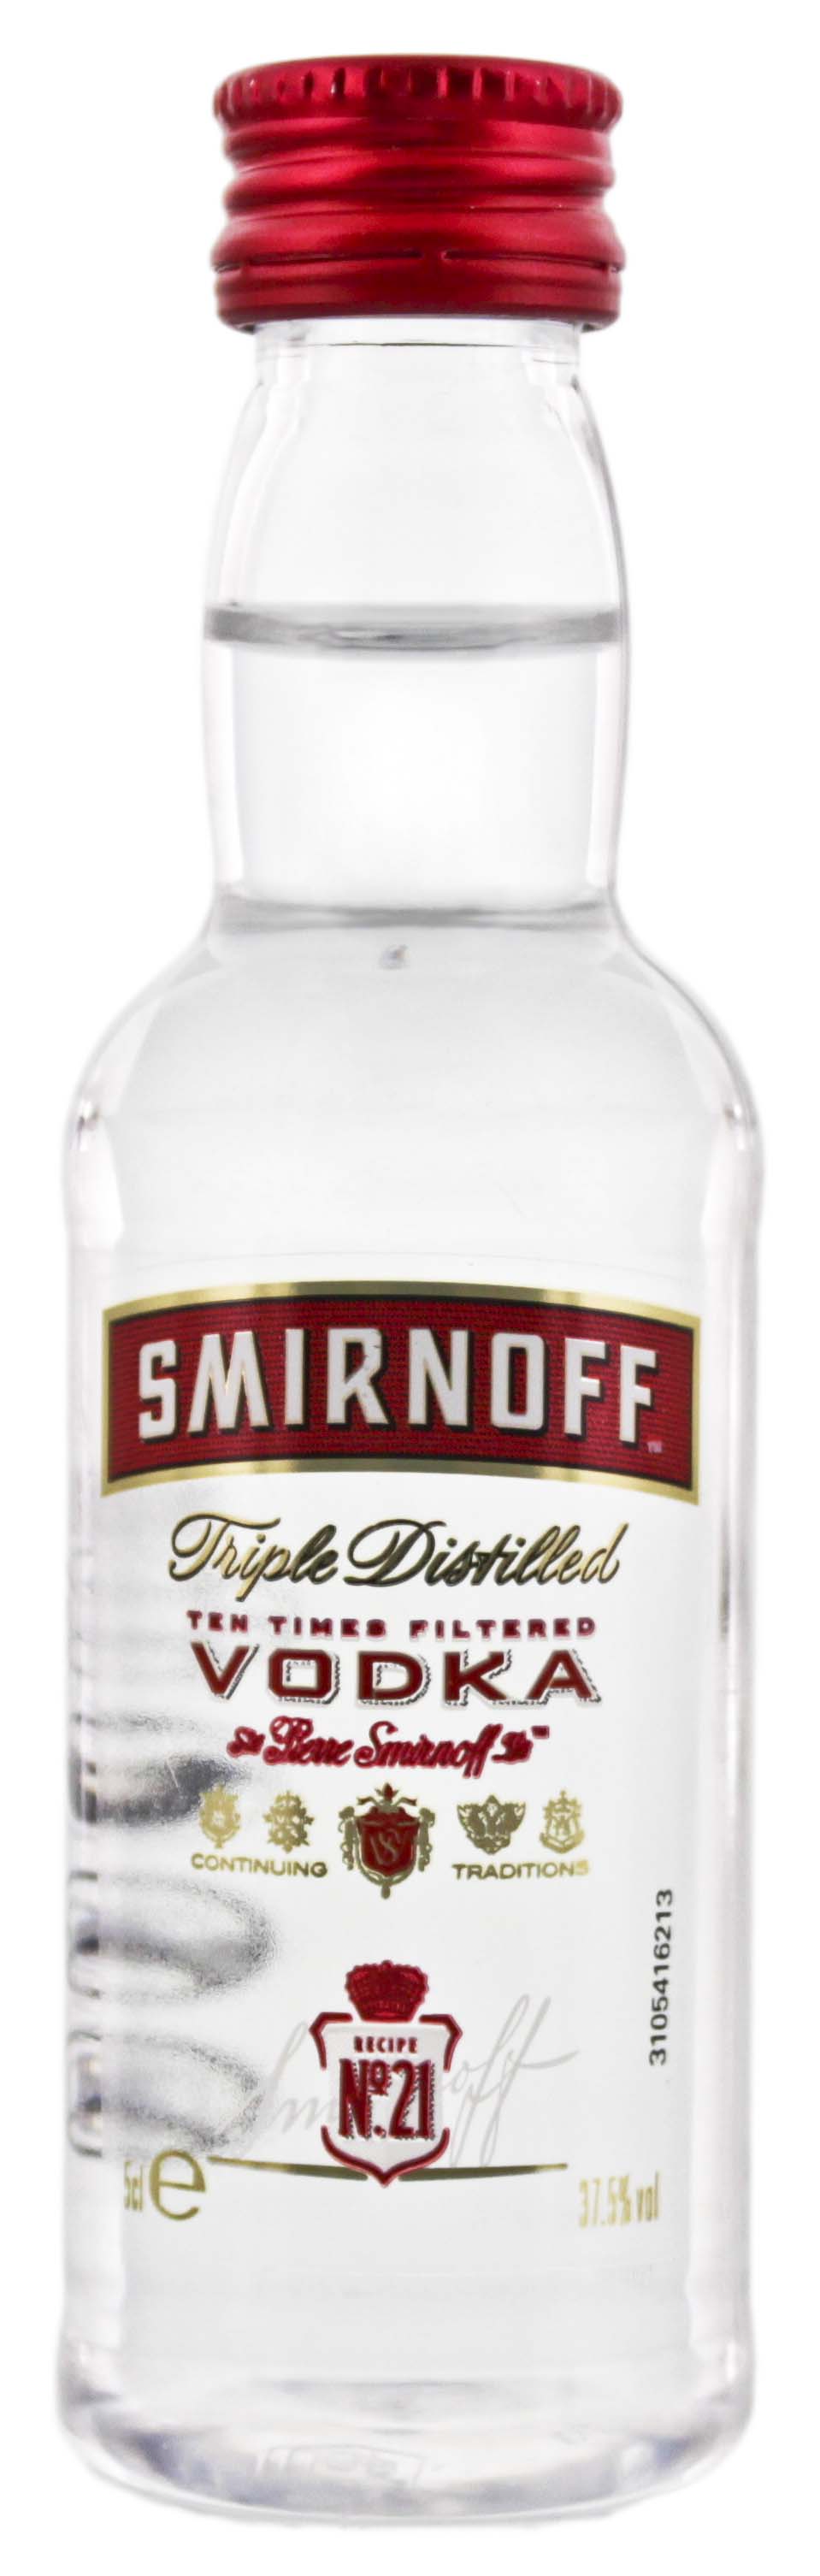 Smirnoff Vodka Red Label Miniatur 0,05L jetzt kaufen im